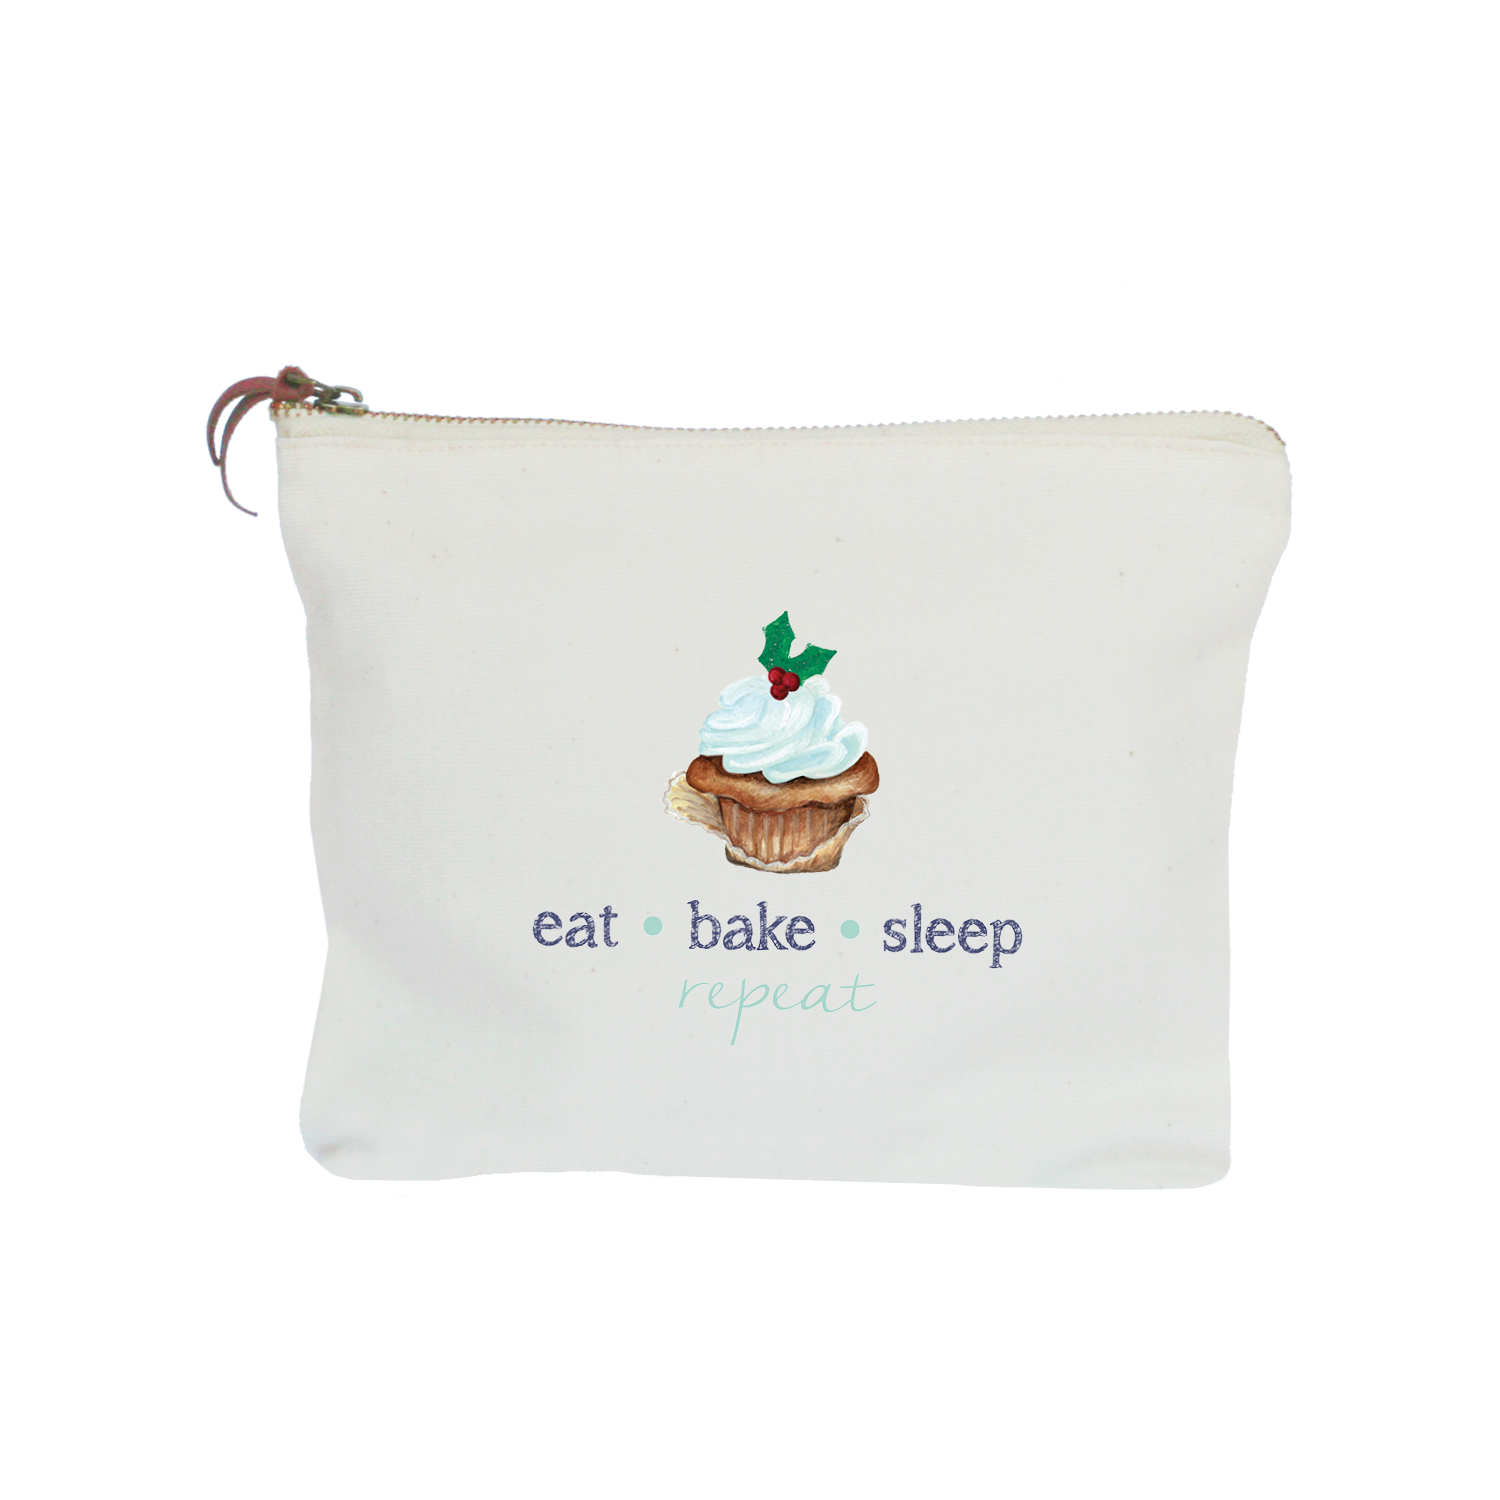 eat bake sleep repeat zipper pouch